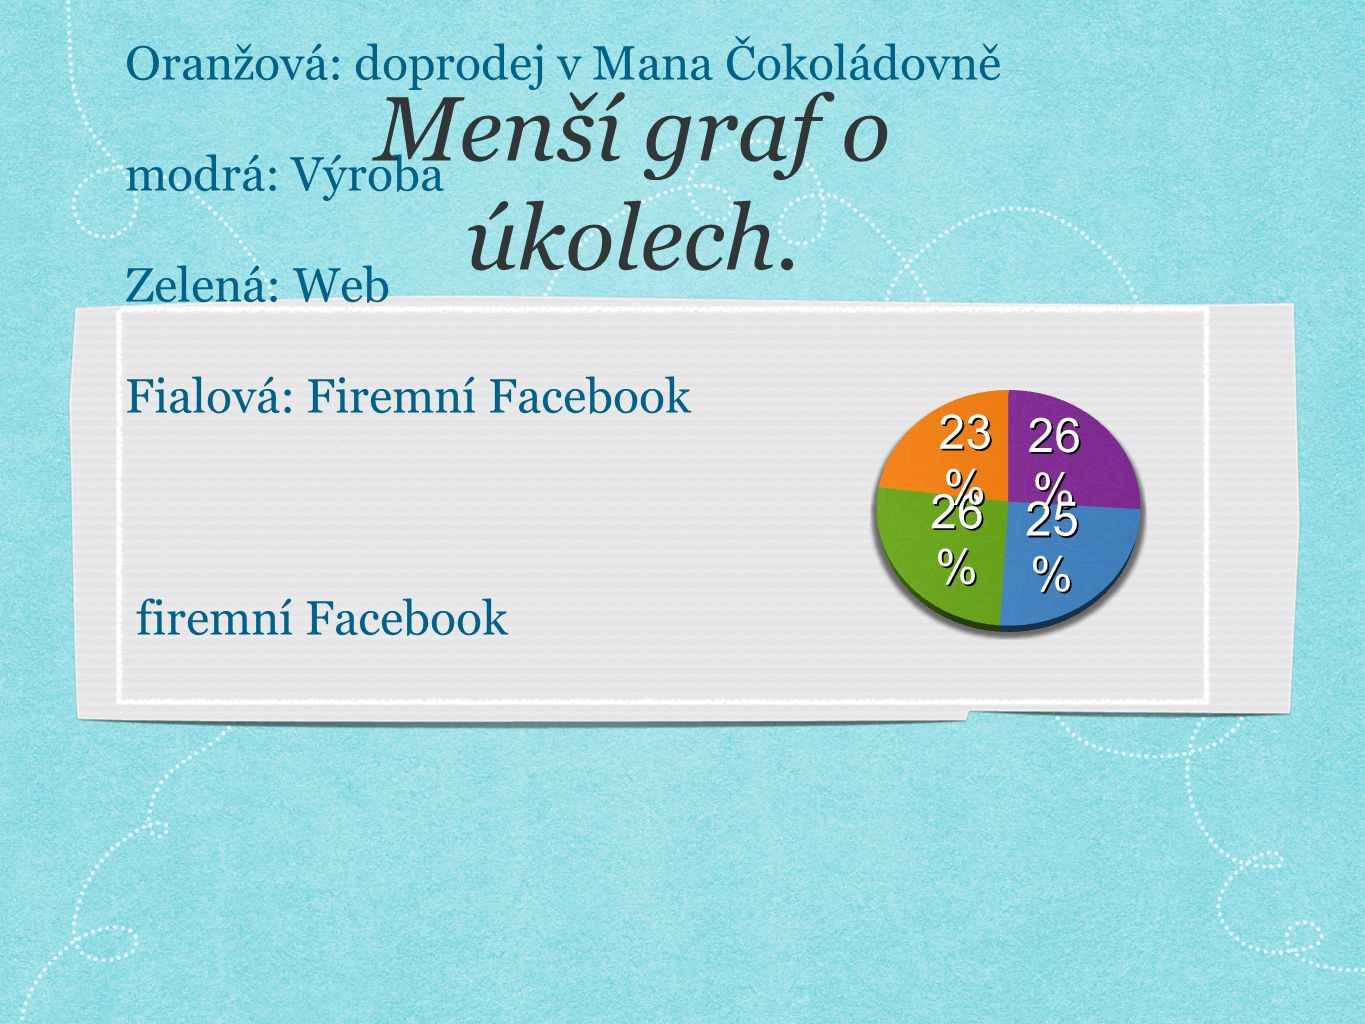 Oranžová: doprodej v Mana Čokoládovně modrá: Výroba Zelená: Web Fialová: Firemní Facebook firemní Facebook Menší graf o úkolech.